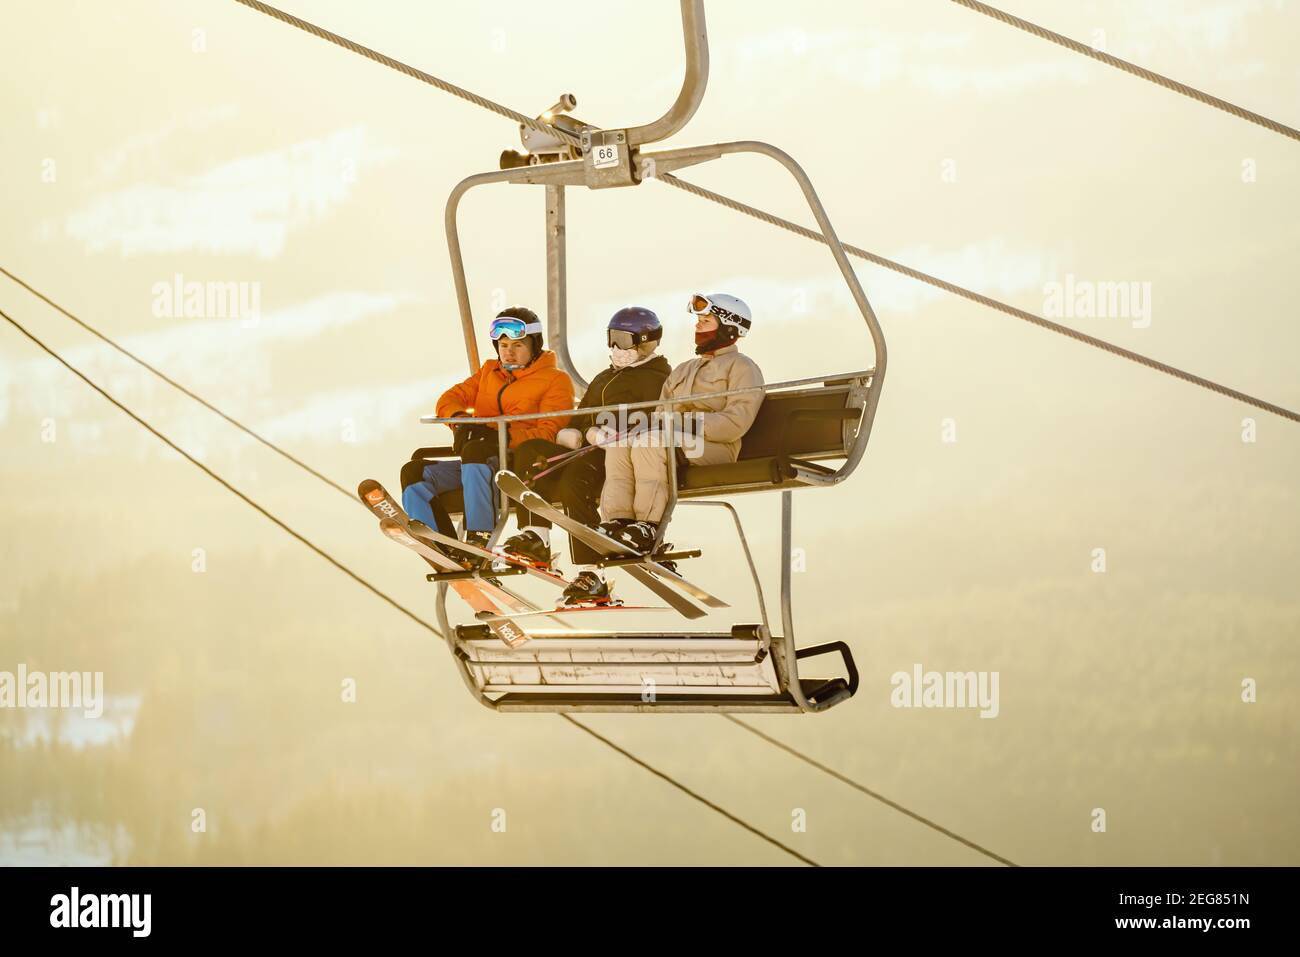 Groupe d'adolescents skiant sur un télésiège dans la lumière chaude du soir. Banque D'Images